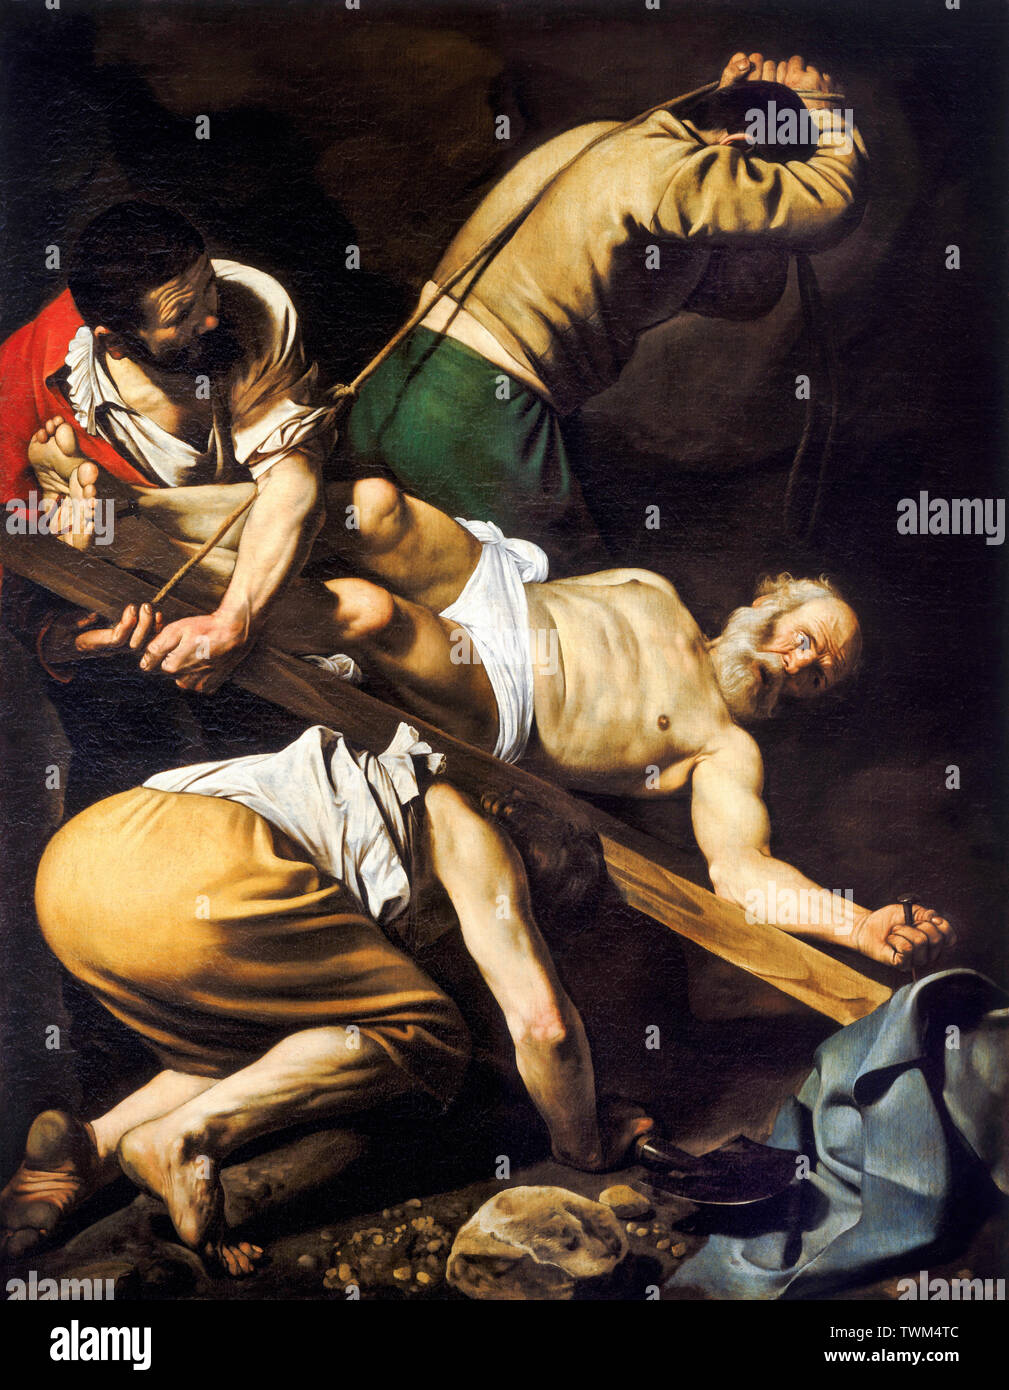 Caravaggio, Crucifixión de San Pedro, Pintura barroca, circa 1600 Foto de stock